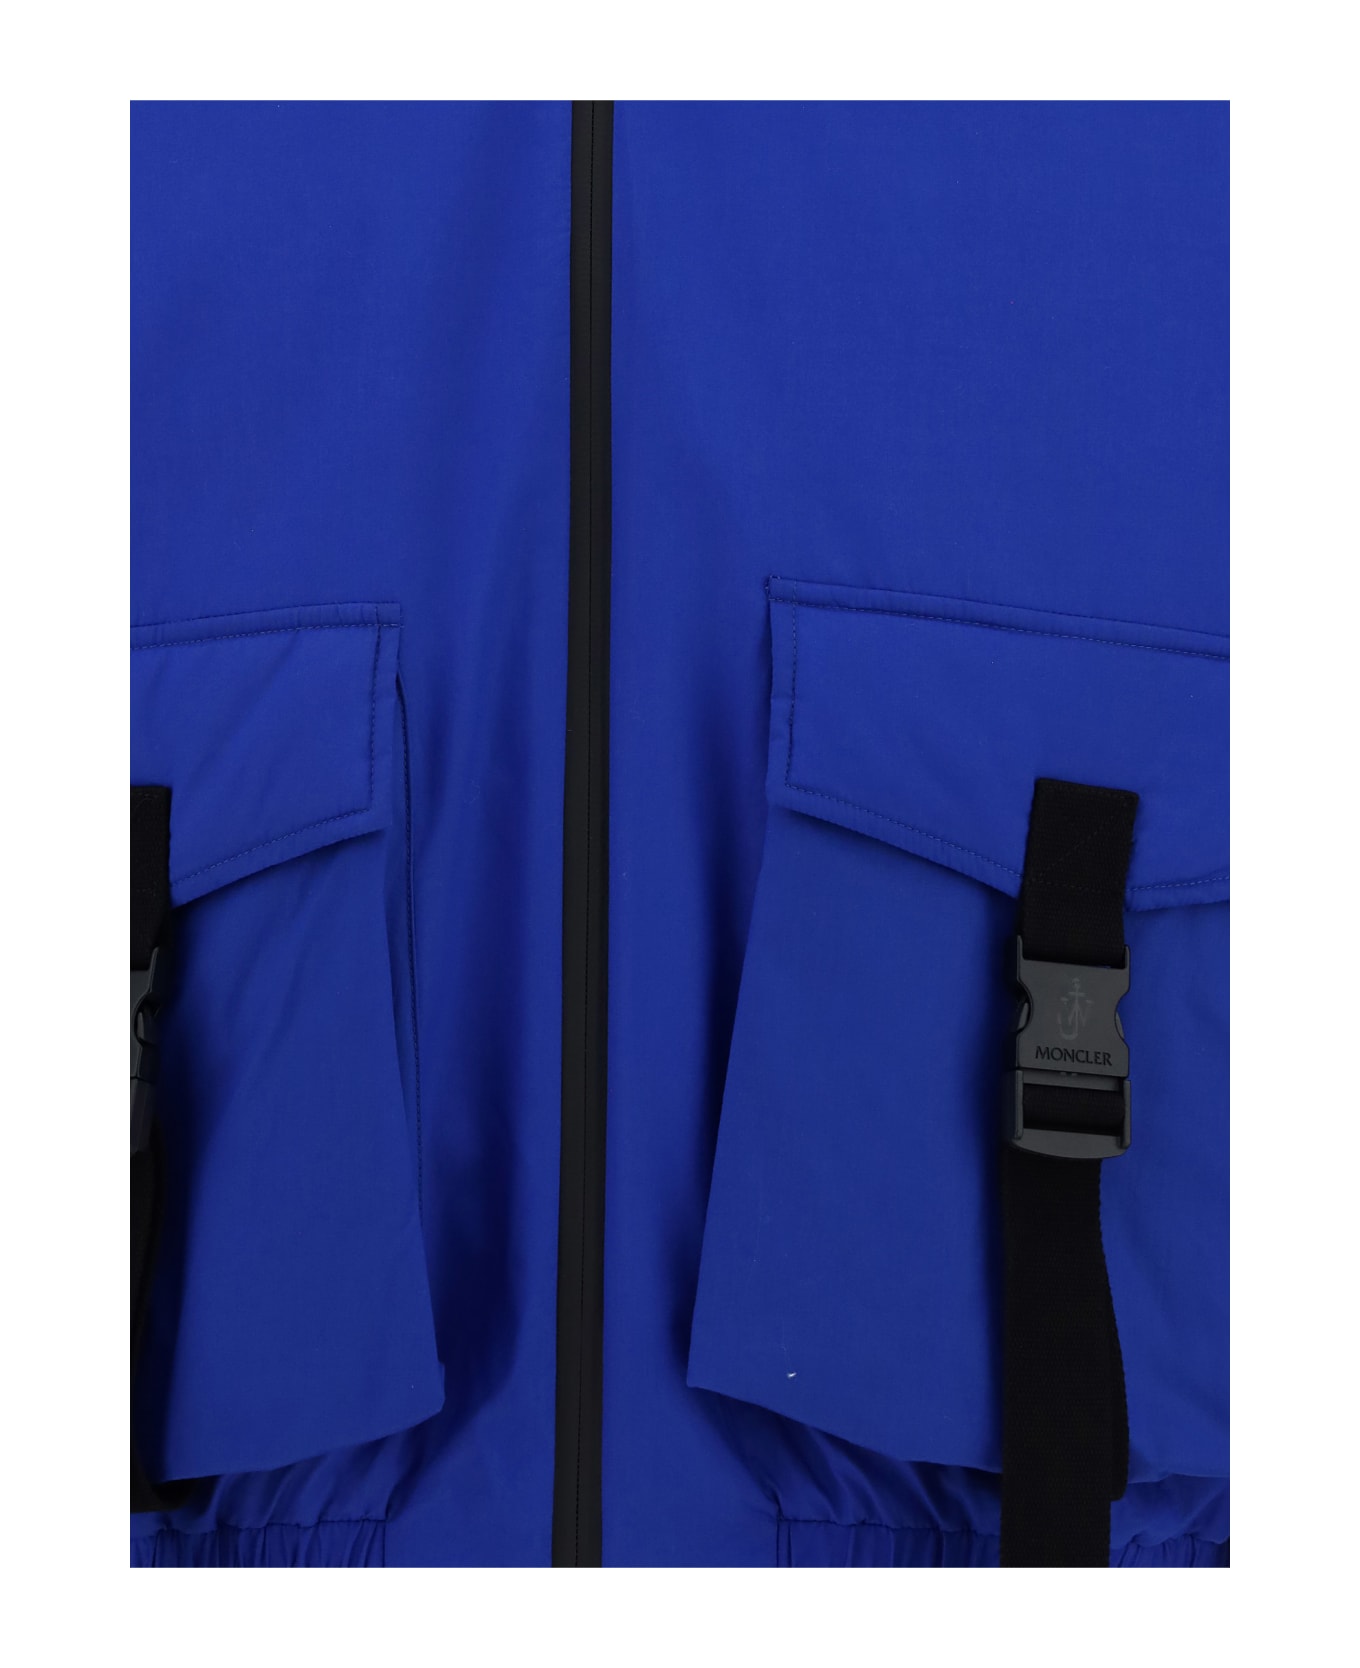 Moncler Genius Skiddaw Jacket - Blu